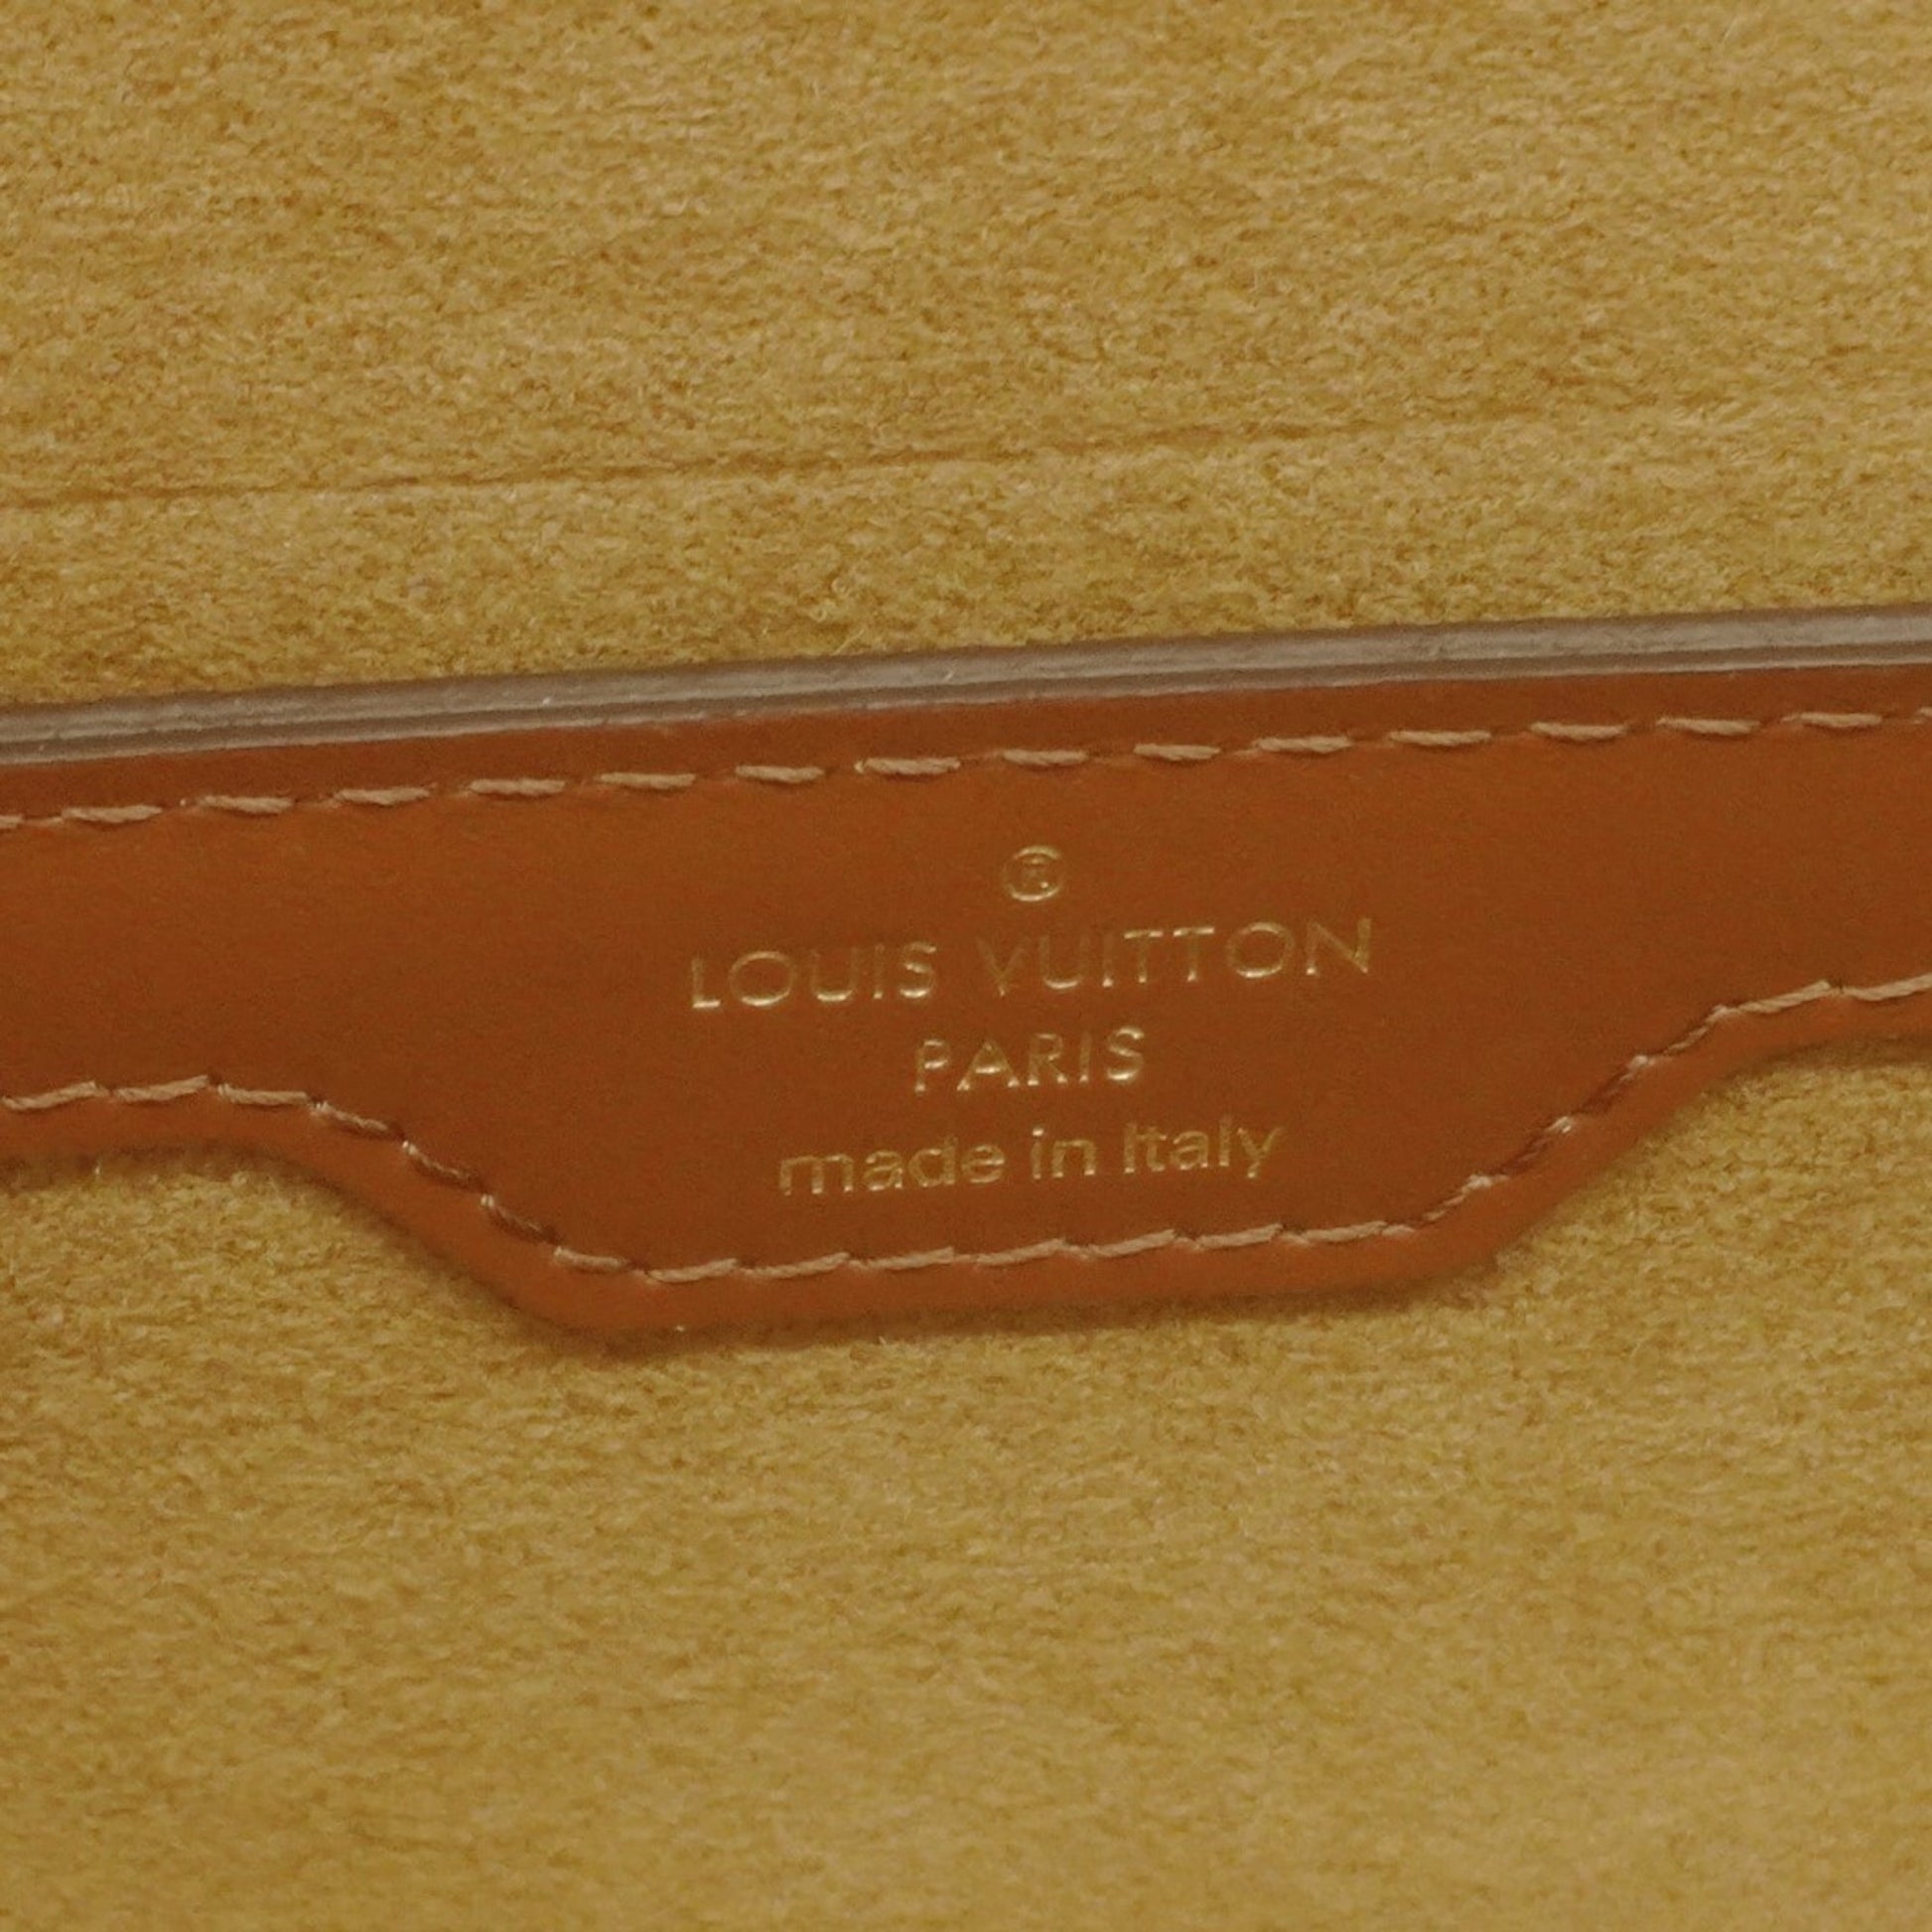 Shop Louis Vuitton MONOGRAM Papillon Trunk (M57835) by lemontree28